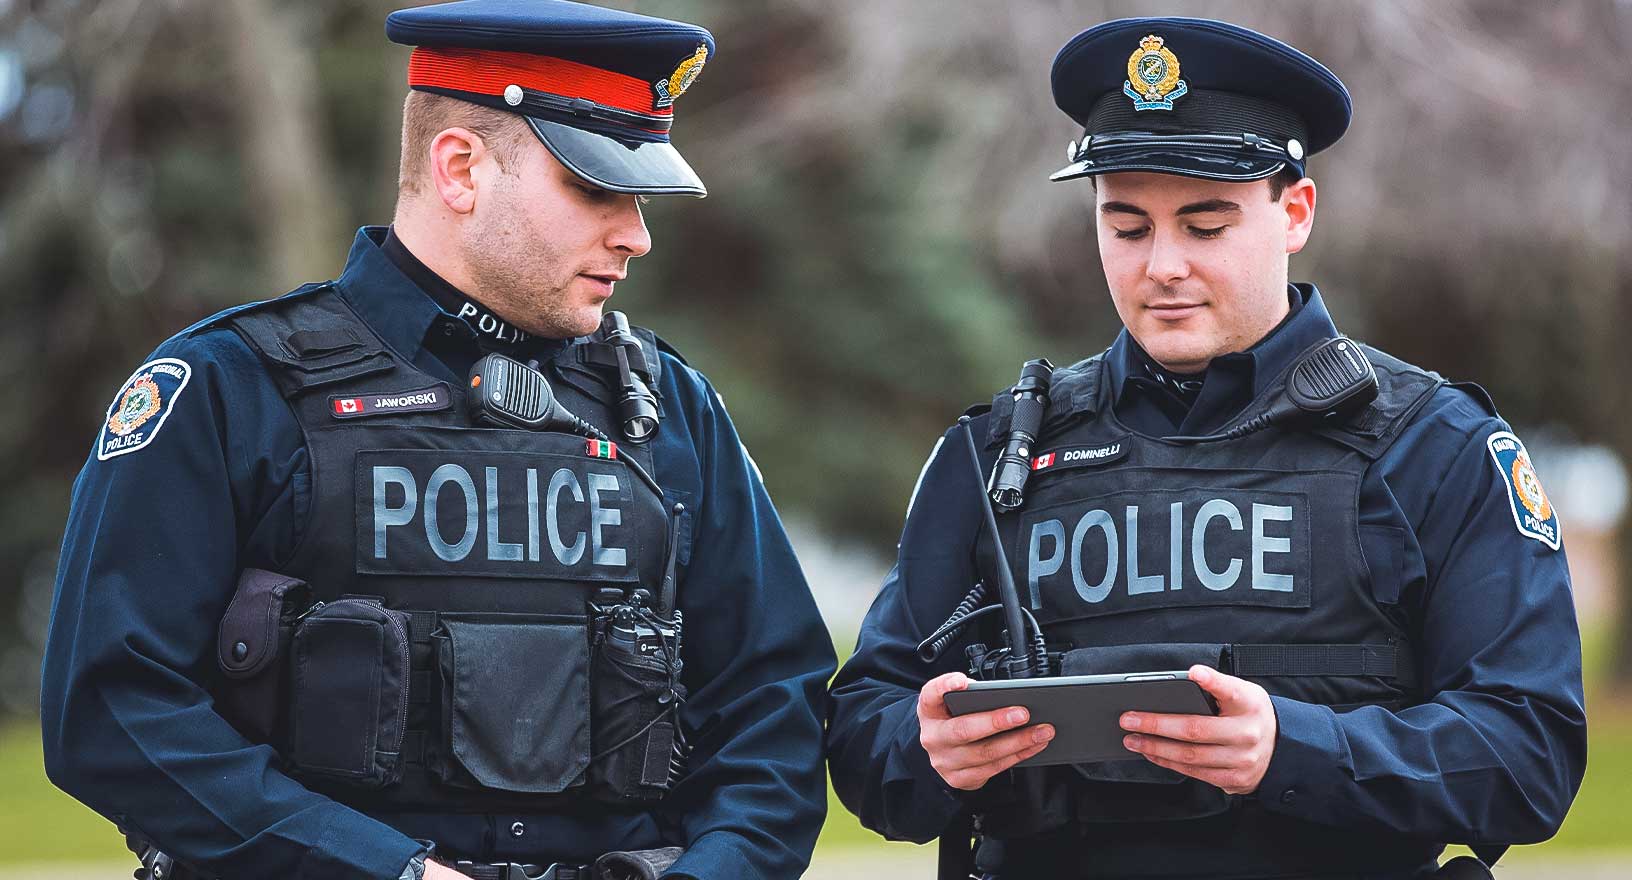 A polícia utiliza um sistema de gerenciamento de registros de aplicação da lei para receber e revisar informações